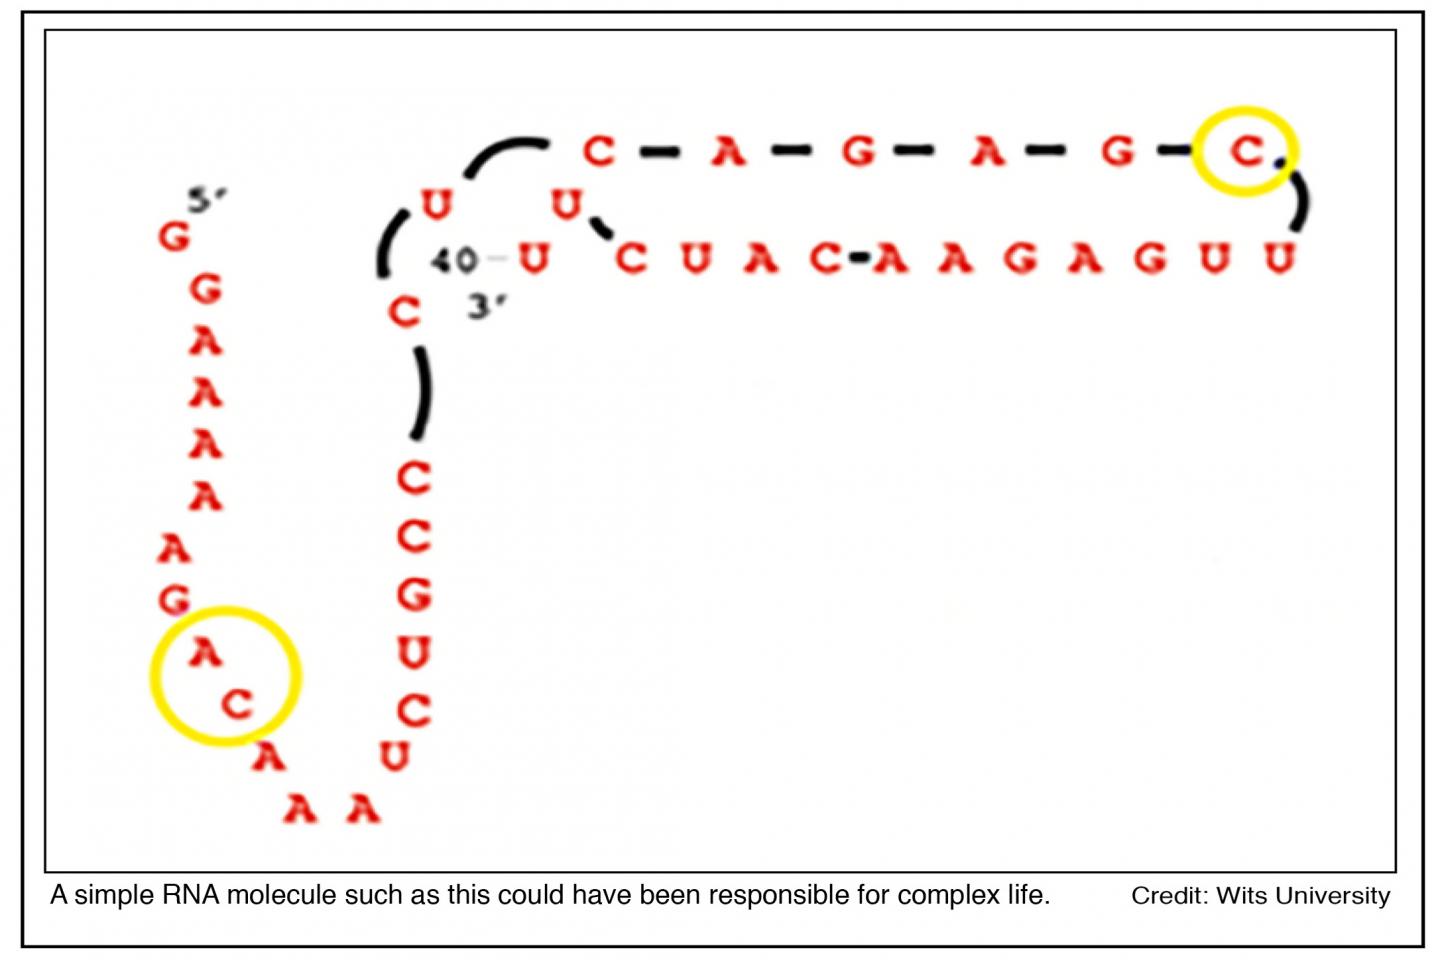 Graphic: A Simple RNA Molecule